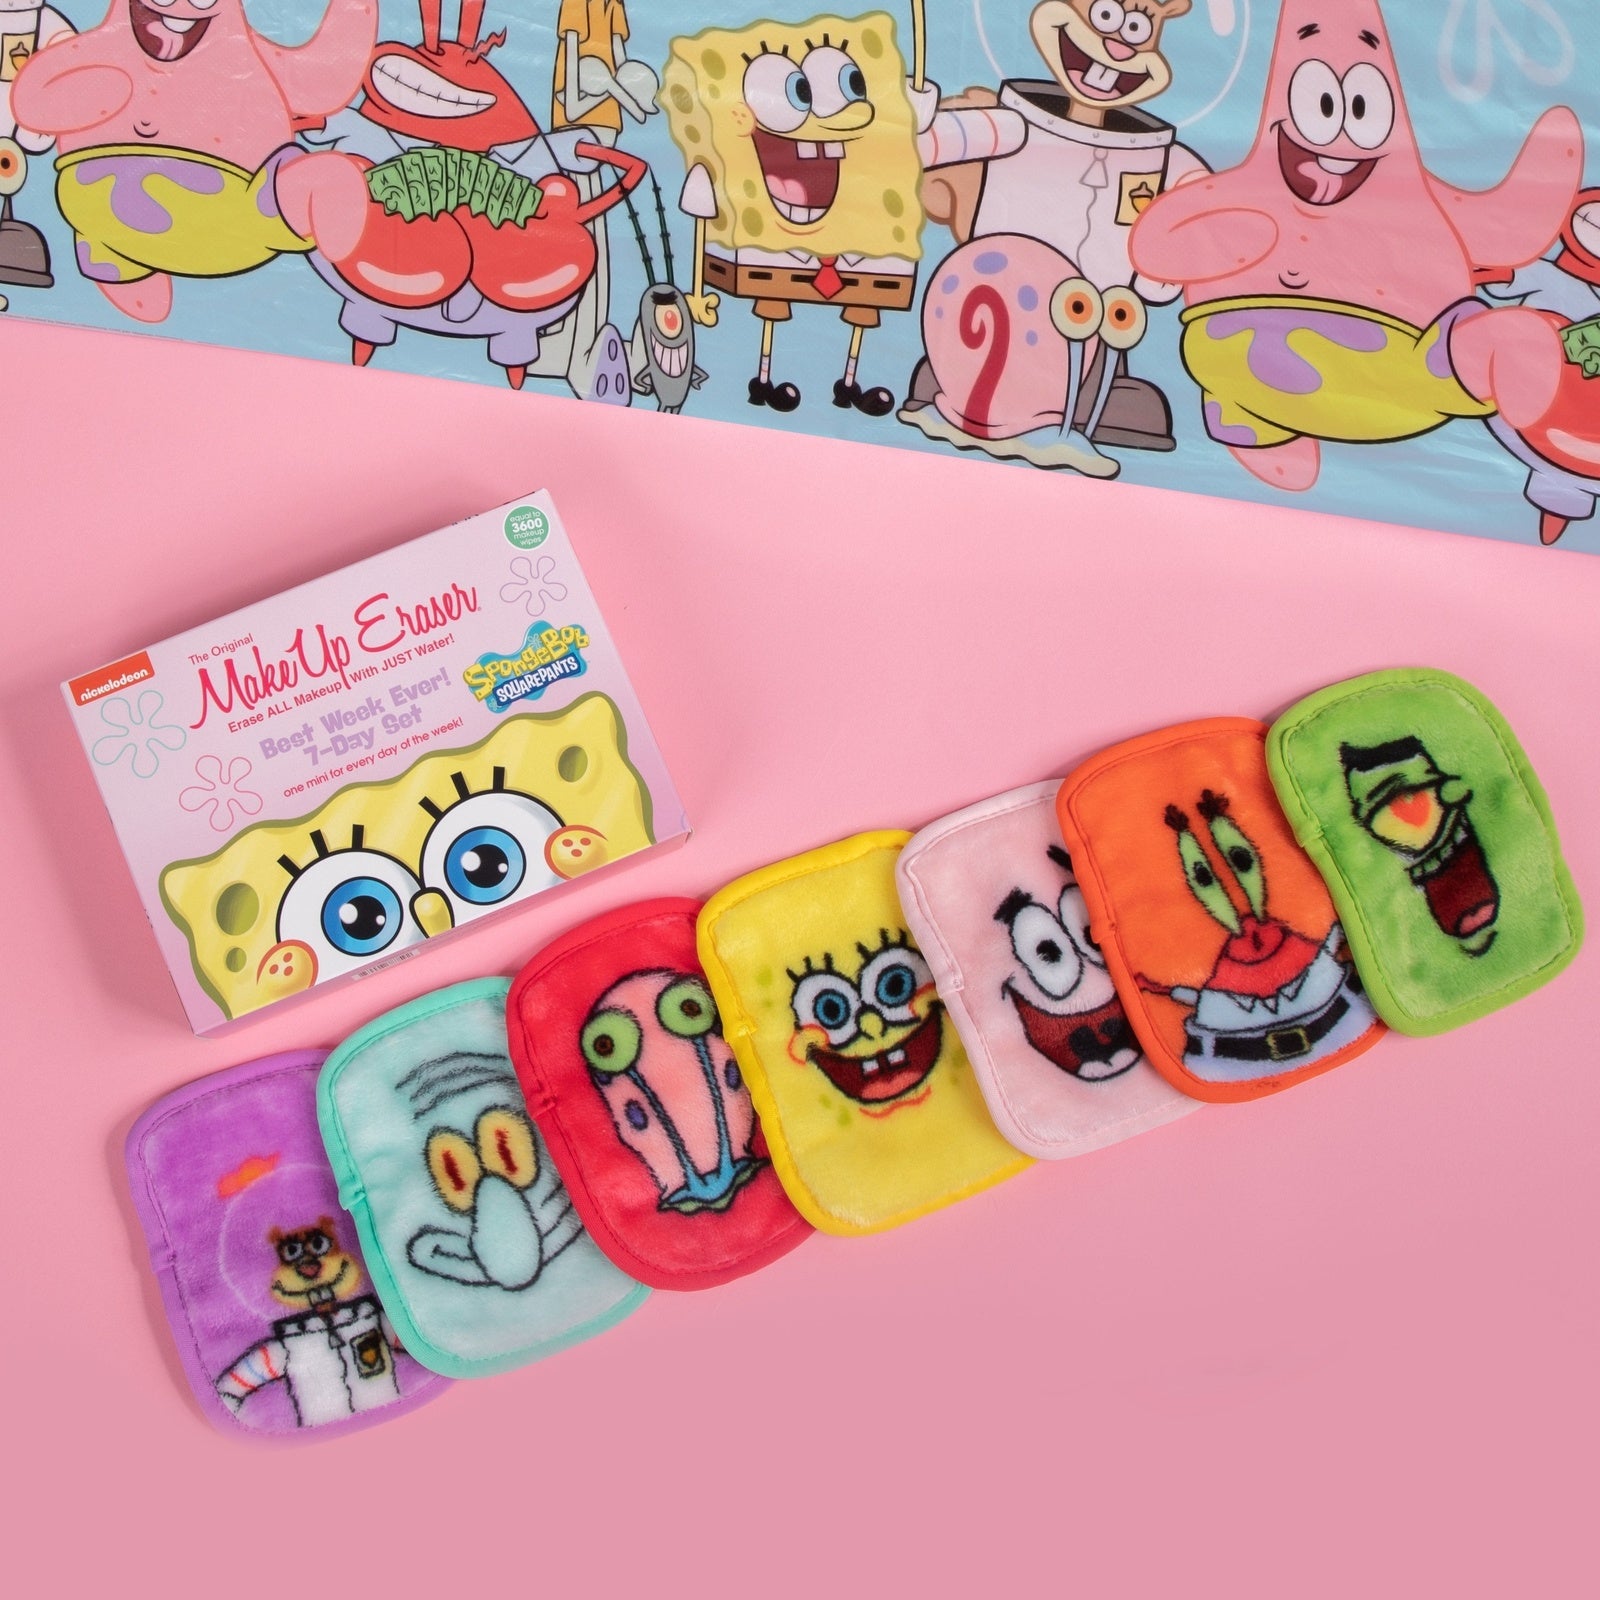 The Original Makeup Eraser SpongeBob 7-Day Set